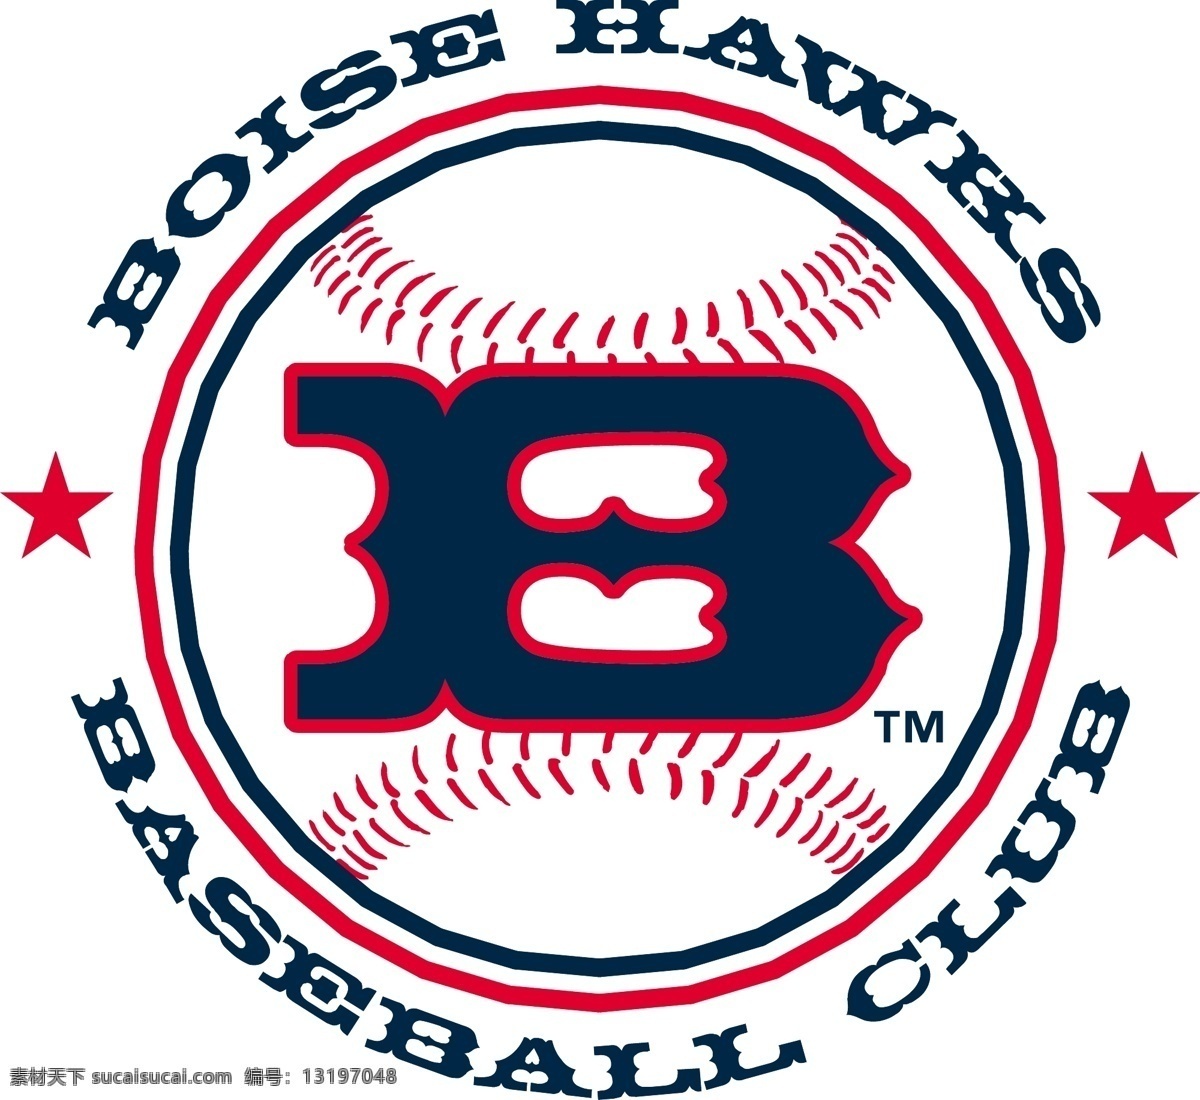 博伊西 海 鹰队 棒球 俱乐部 自由 老鹰队 标志 免费 psd源文件 logo设计